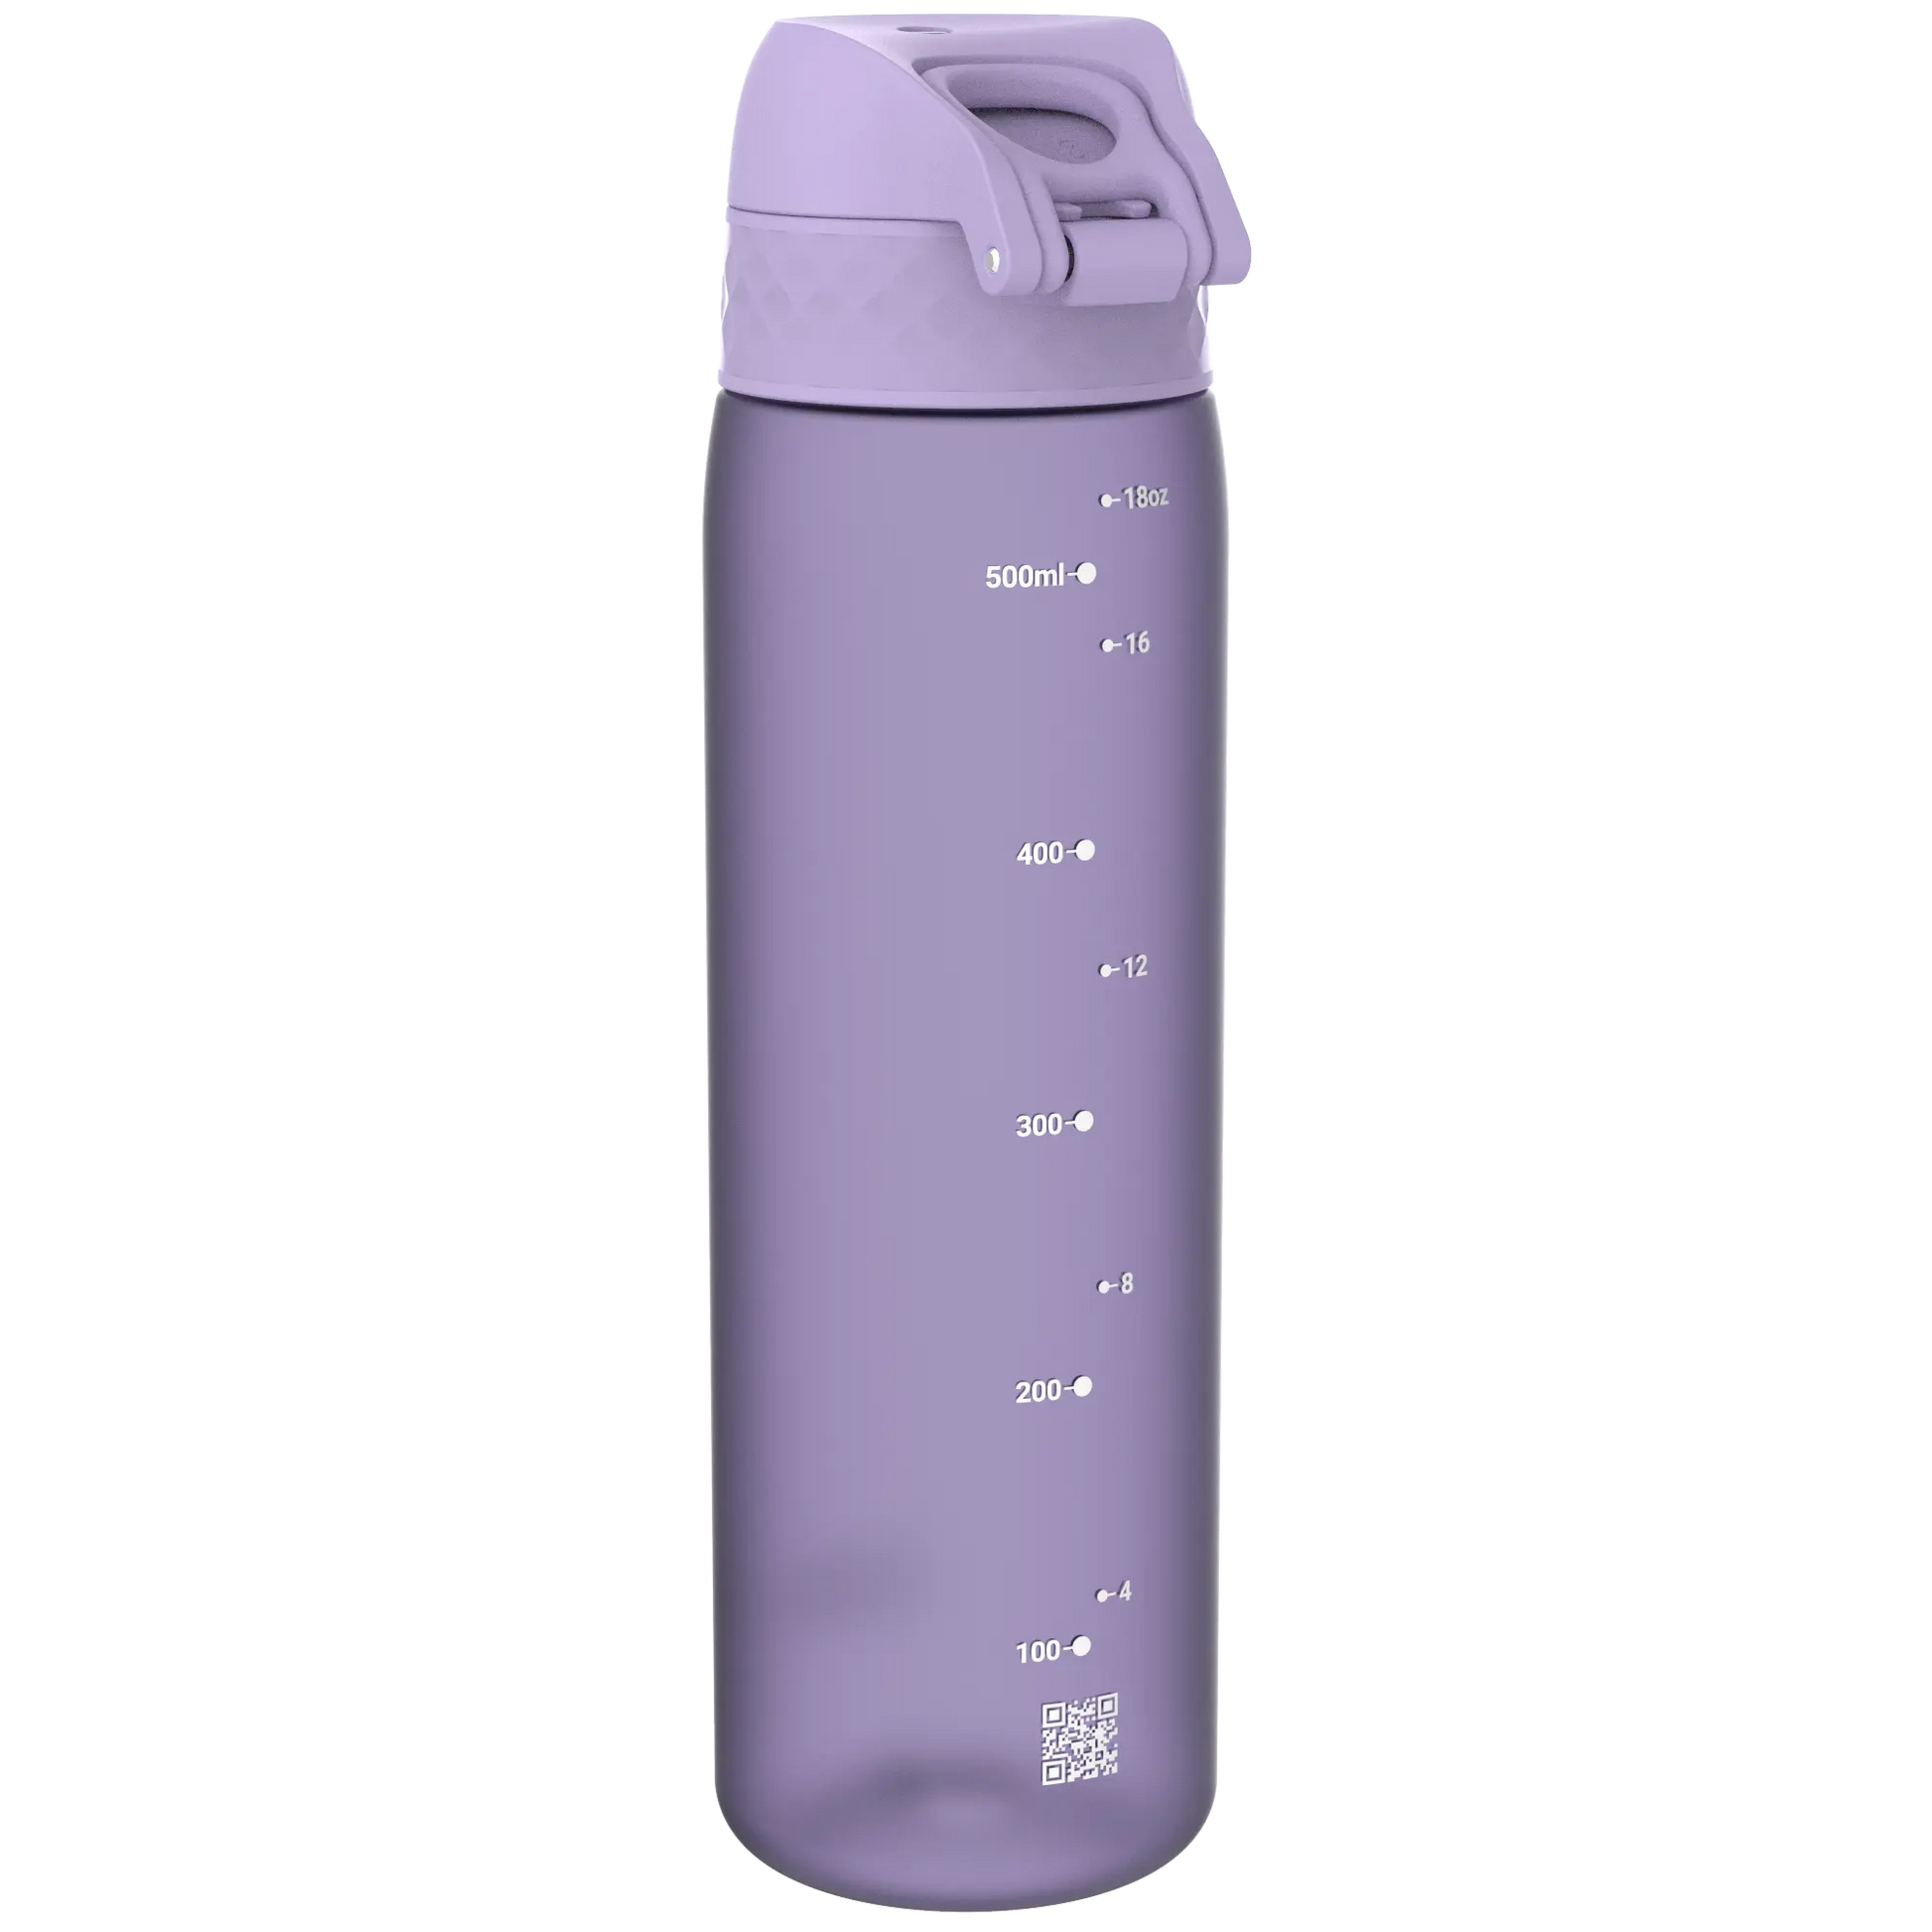 Leak Proof Slim Water Bottle, Recyclon™, Light Purple, 500ml (18oz) Ion8